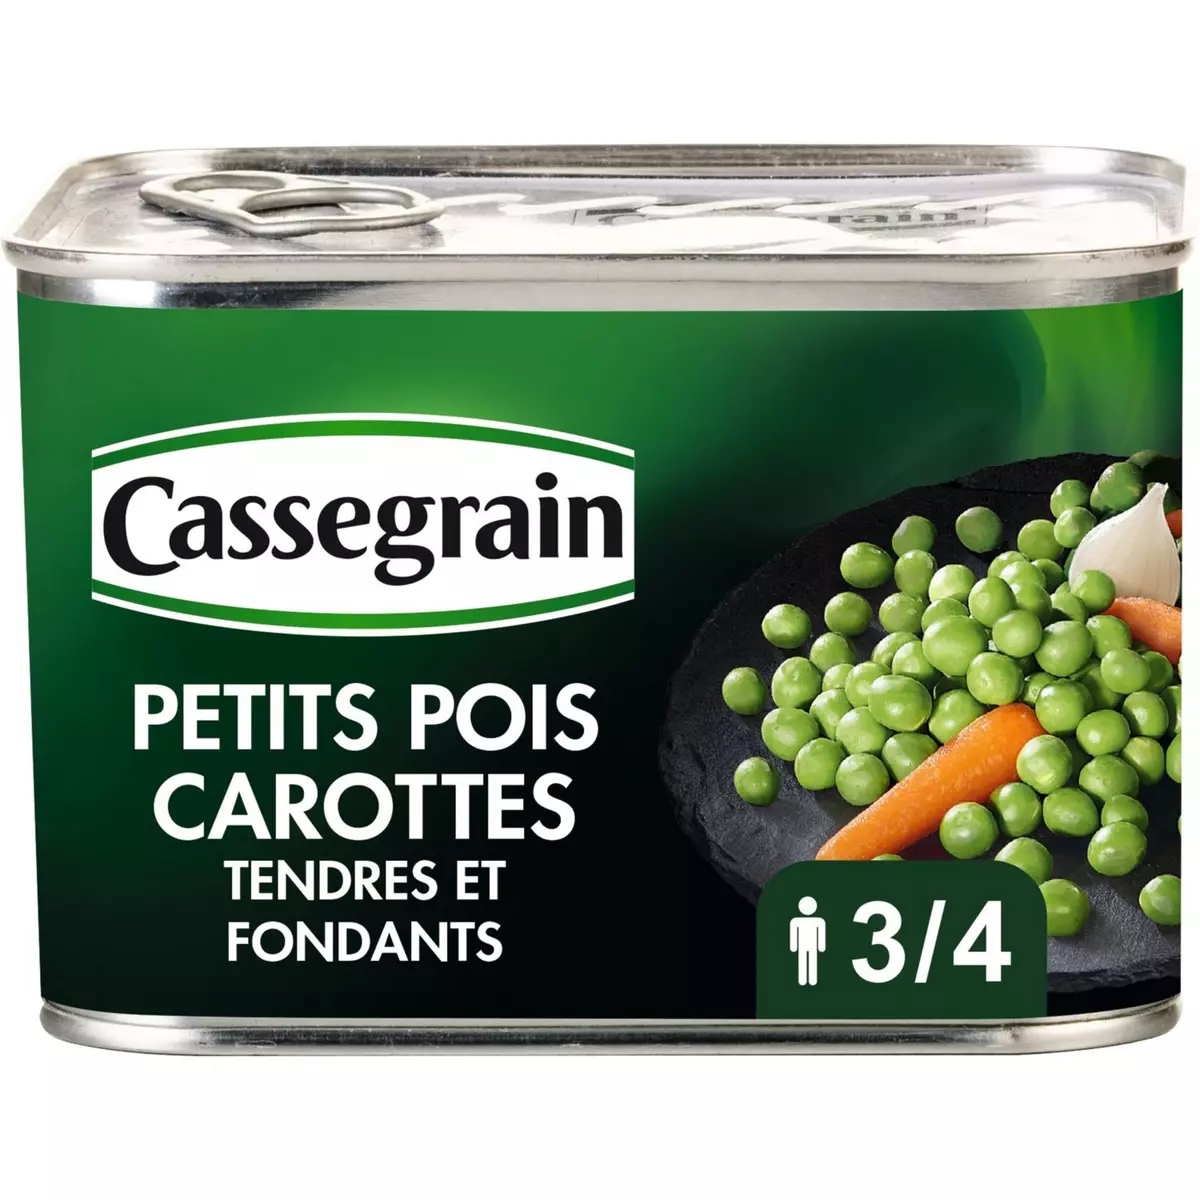 CASSEGRAIN Petits pois carottes tendres et fondants 465g